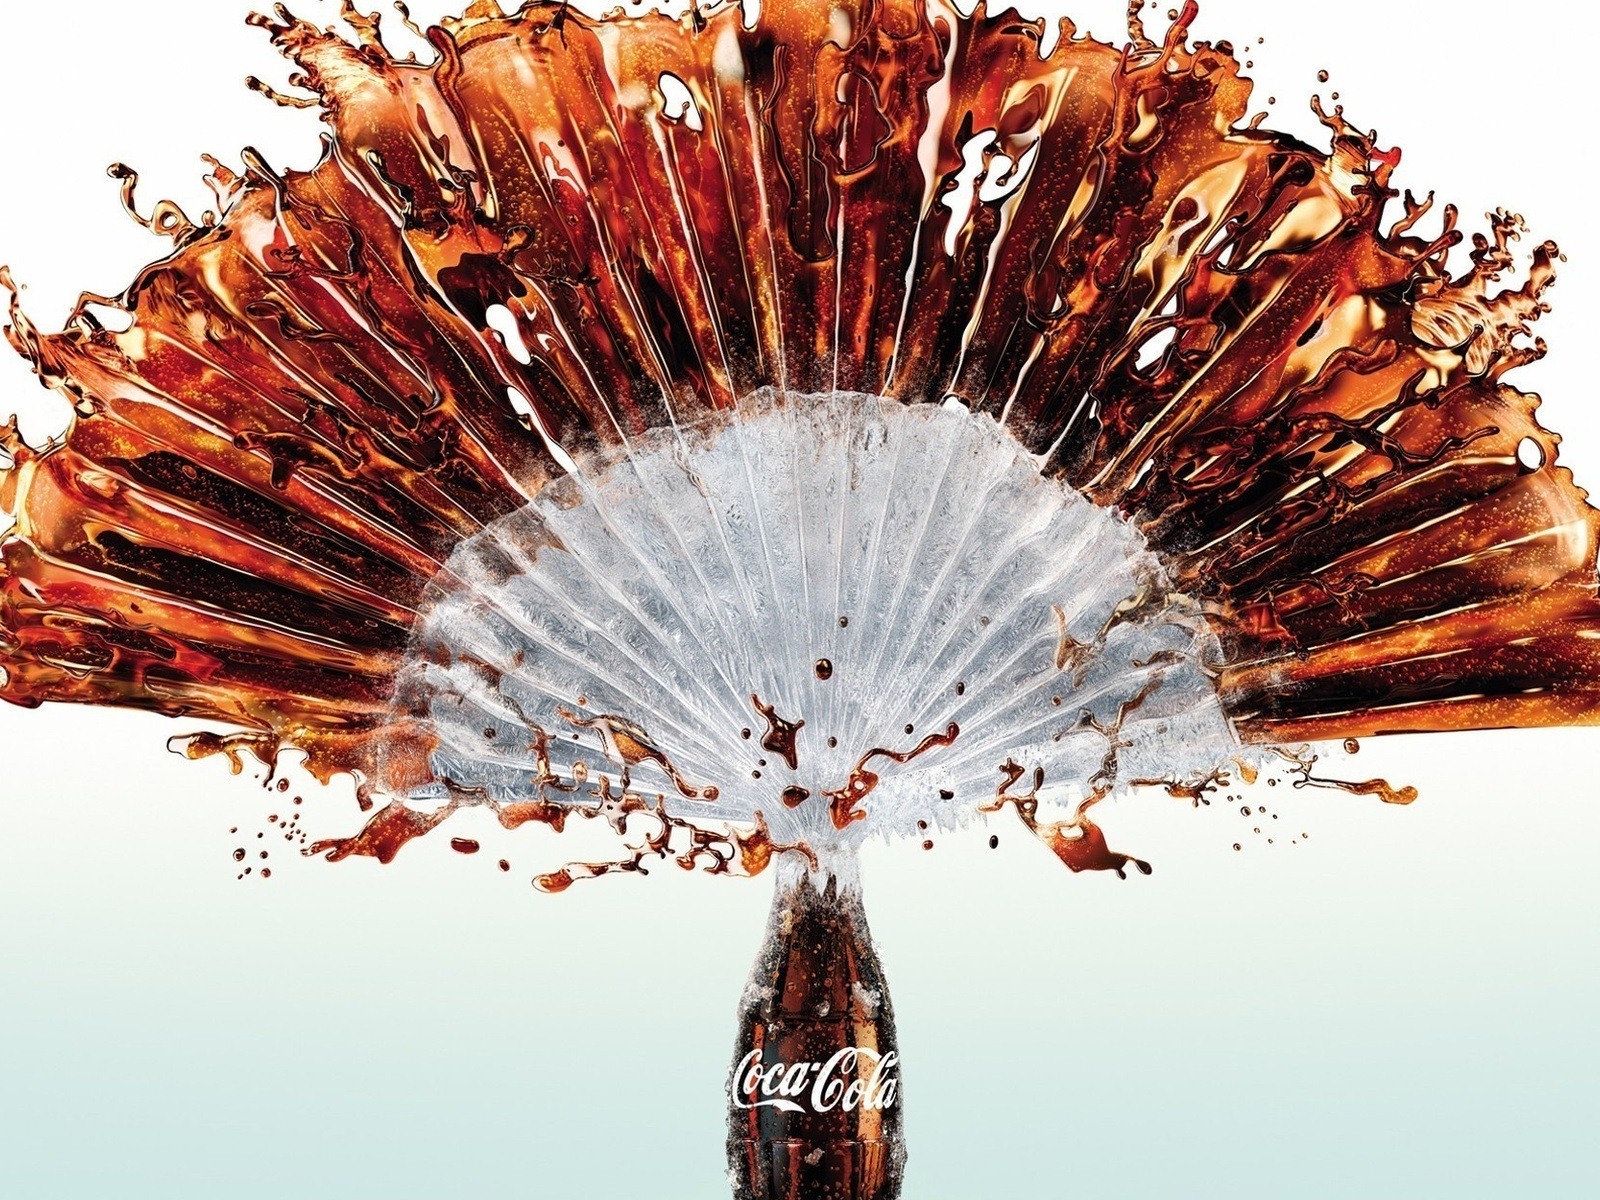 Coca-Cola belle annonce papier peint #1 - 1600x1200